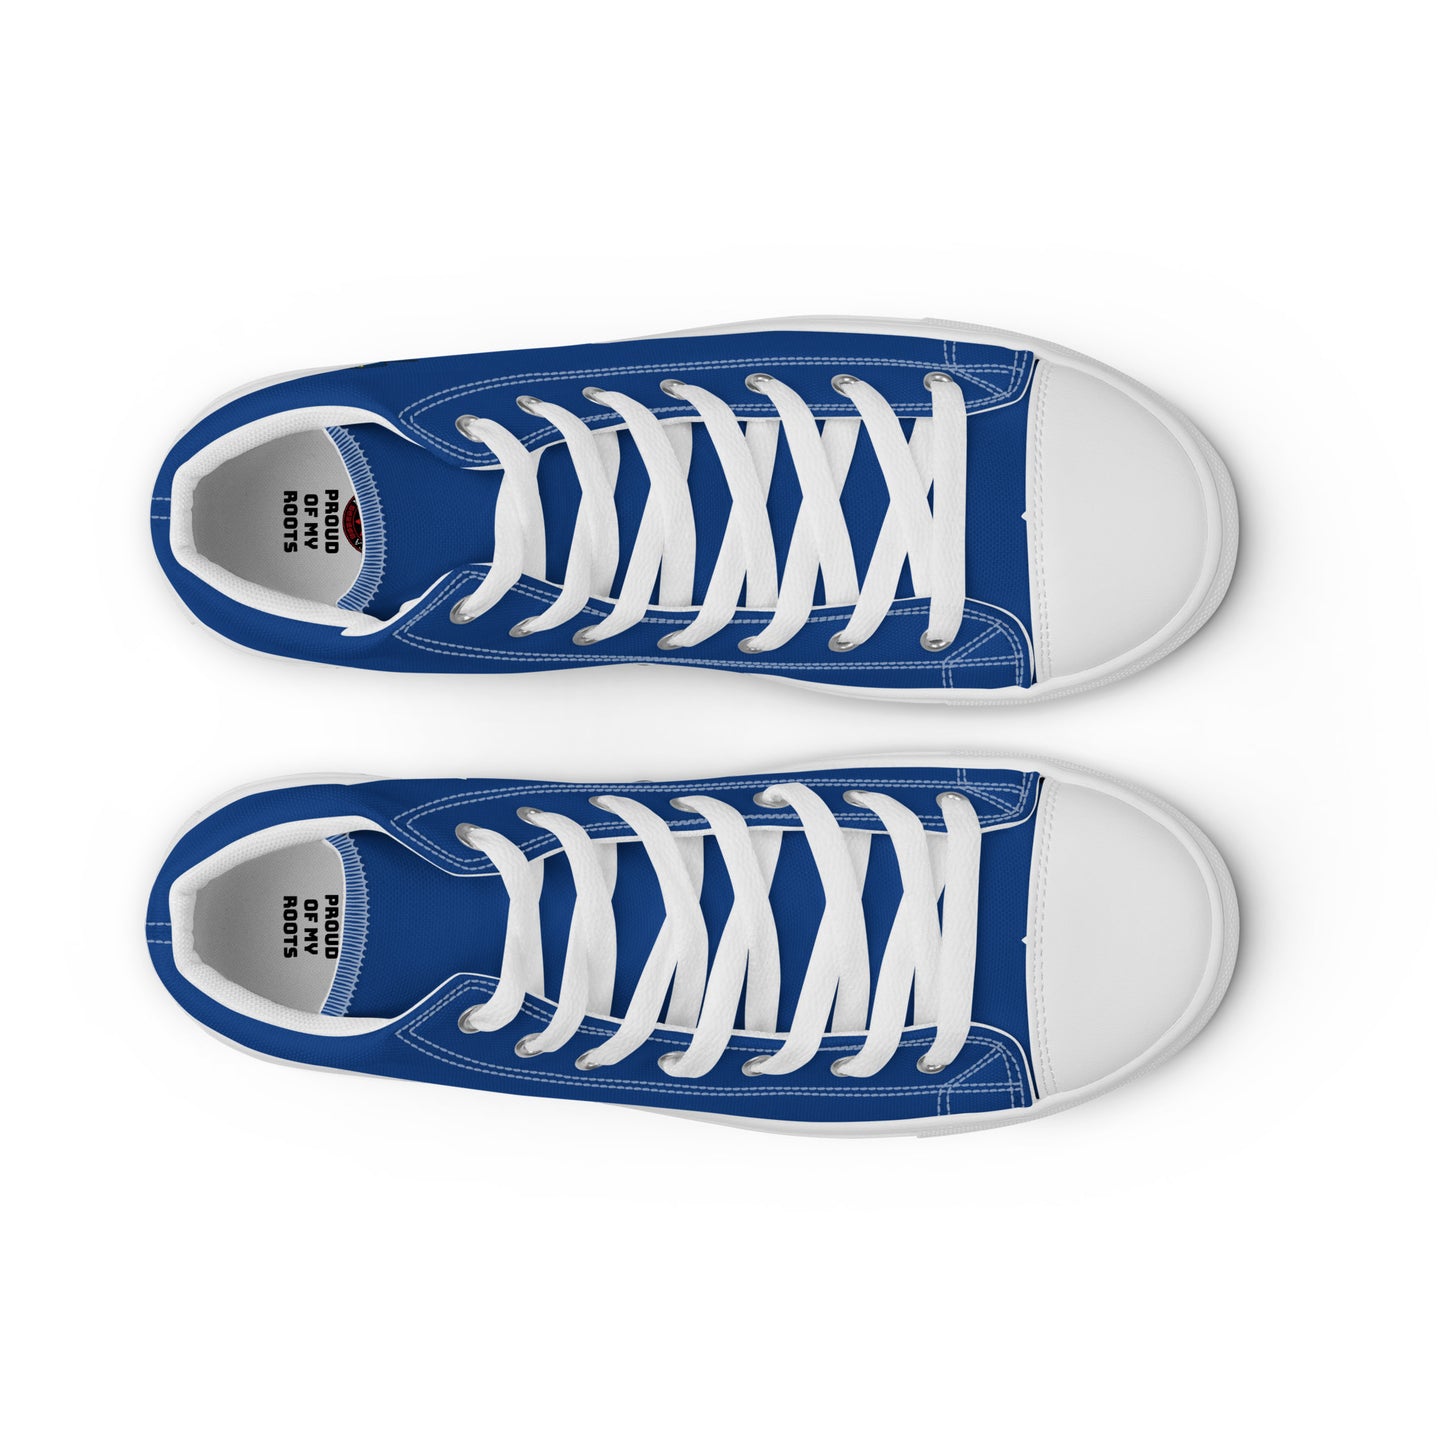 República Dominicana - Men - Blue - High top shoes